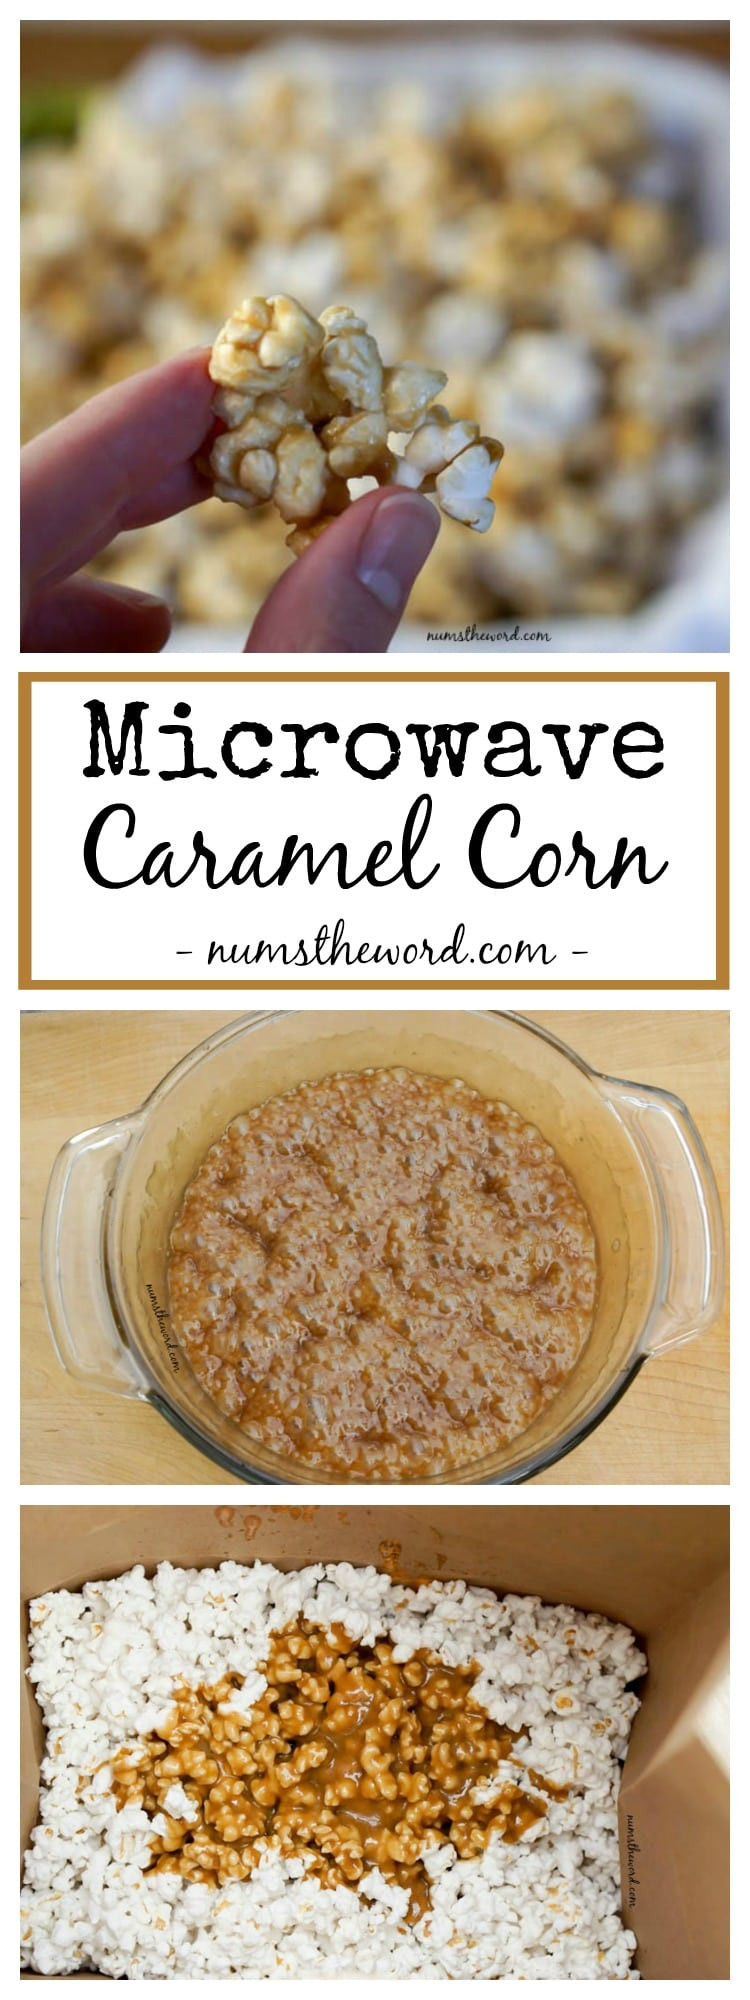 Microwave Caramel Corn
 Microwave Caramel Corn NumsTheWord